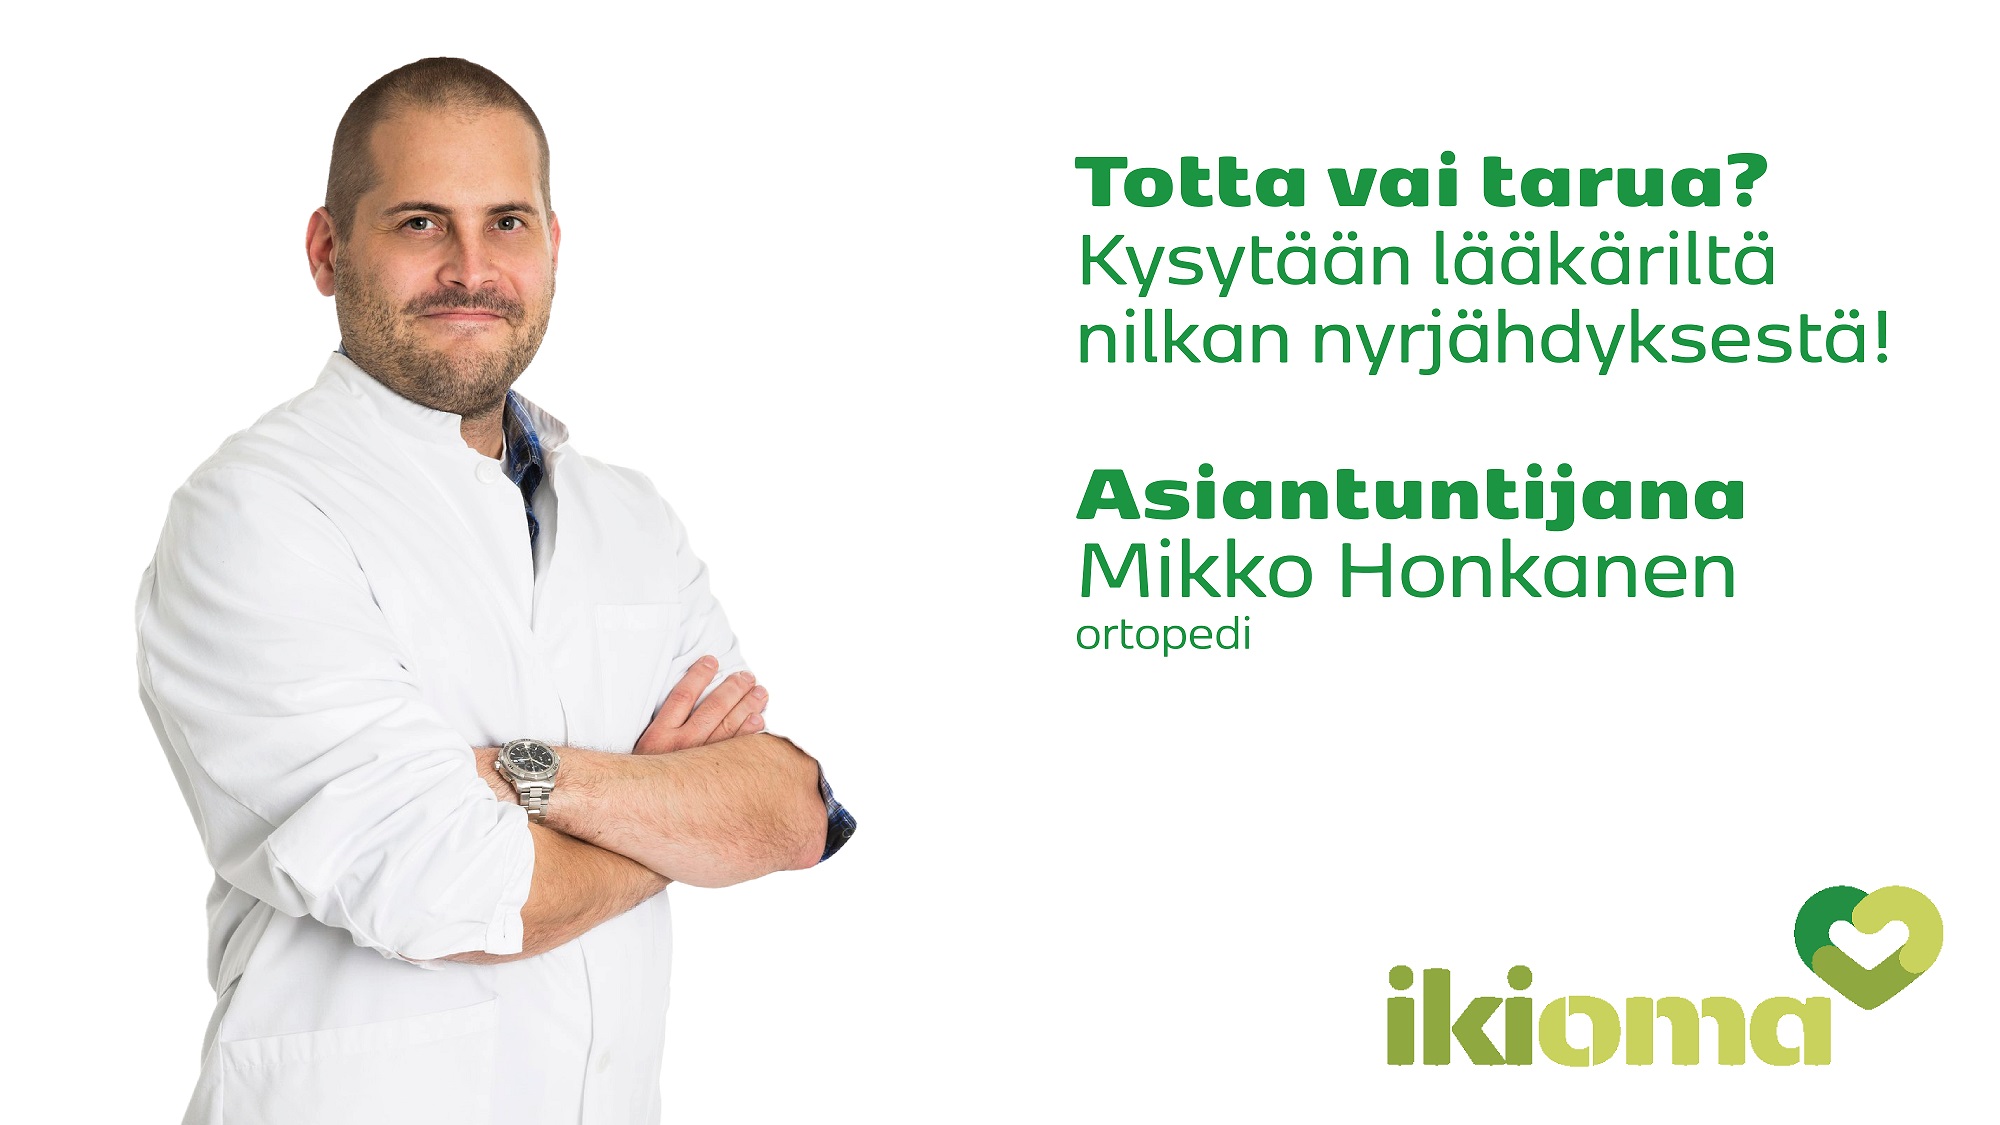 Lääkärikeskus Ikiomassa vastaanottava ortopedi Mikko Honkanen kertoo monelle liikkujalle tutusta harmista, nilkan nyrjähdyksestä.